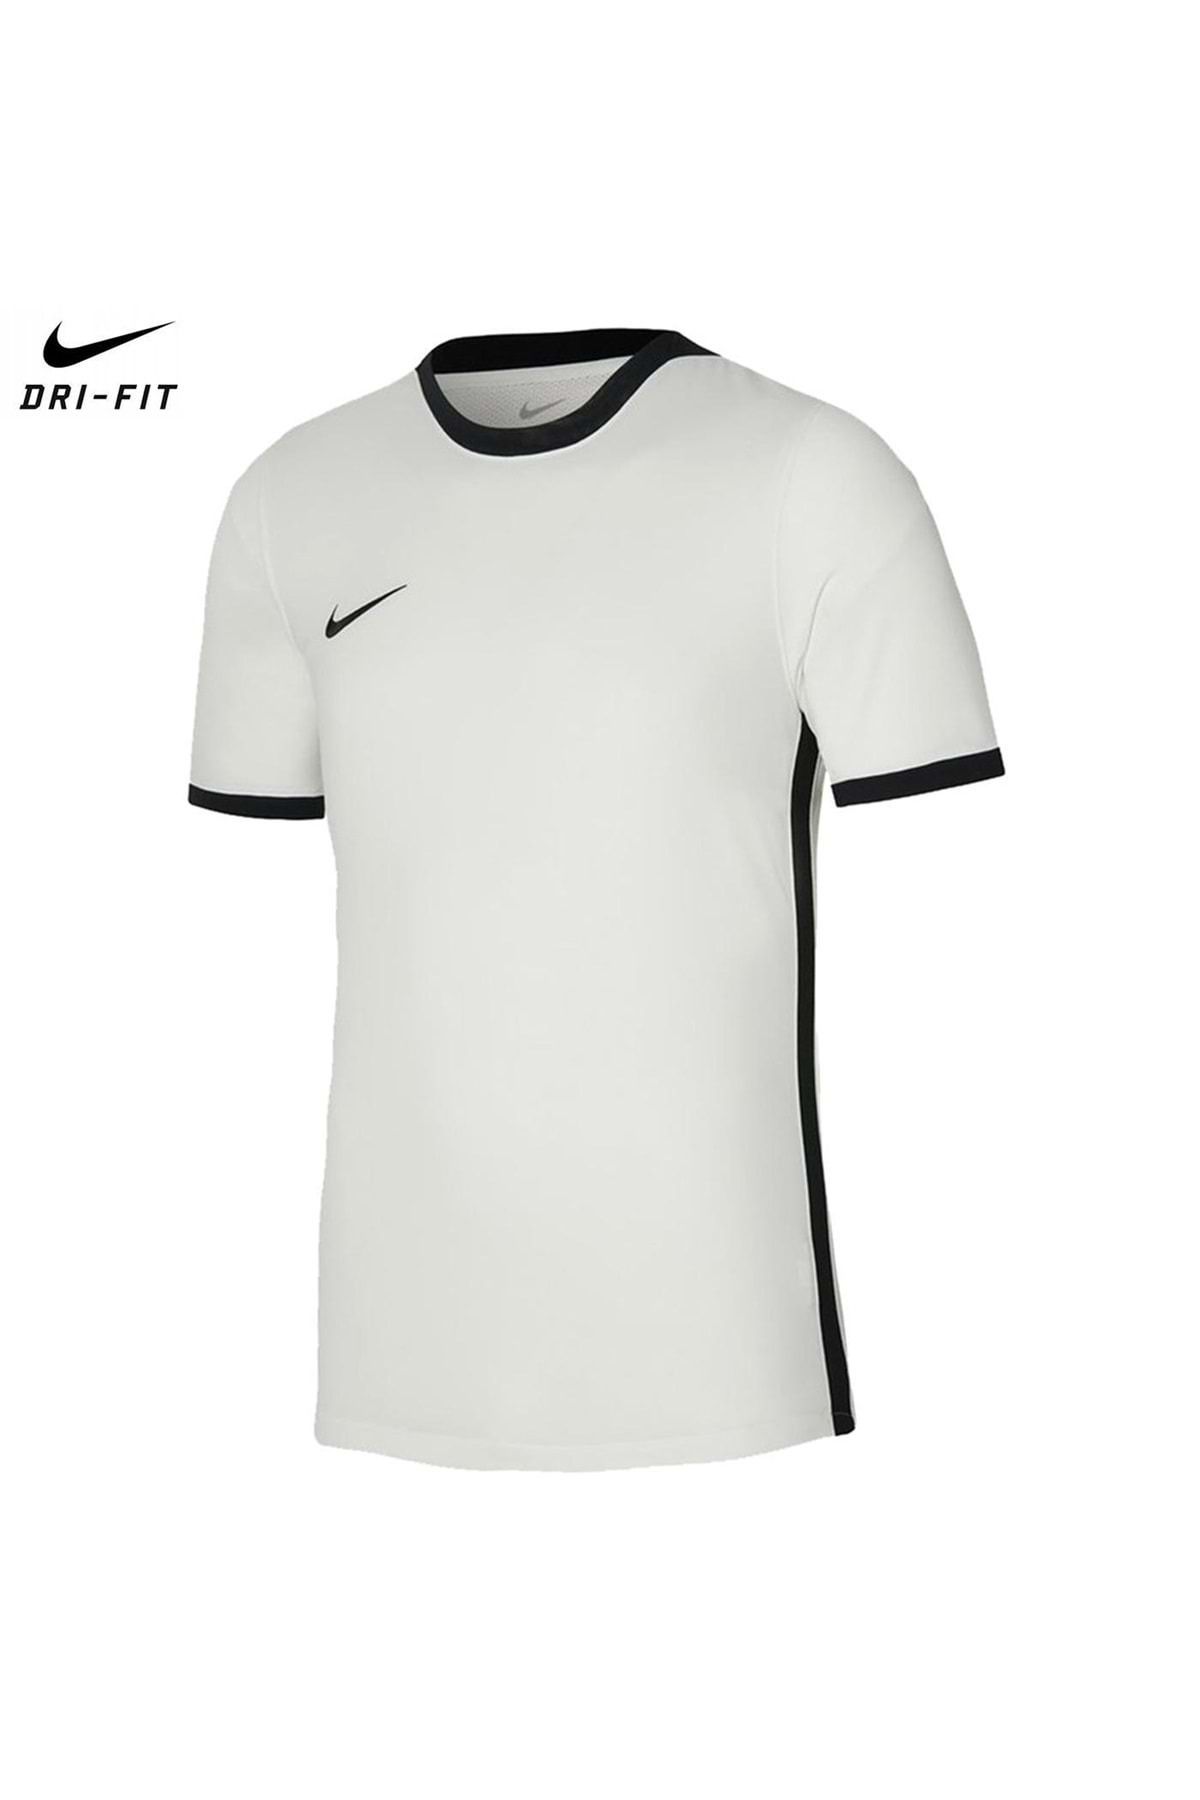 Nike Dh7990-100 Dri-fıt Challenge Iv Tişört Erkek Futbol Forması Beyaz